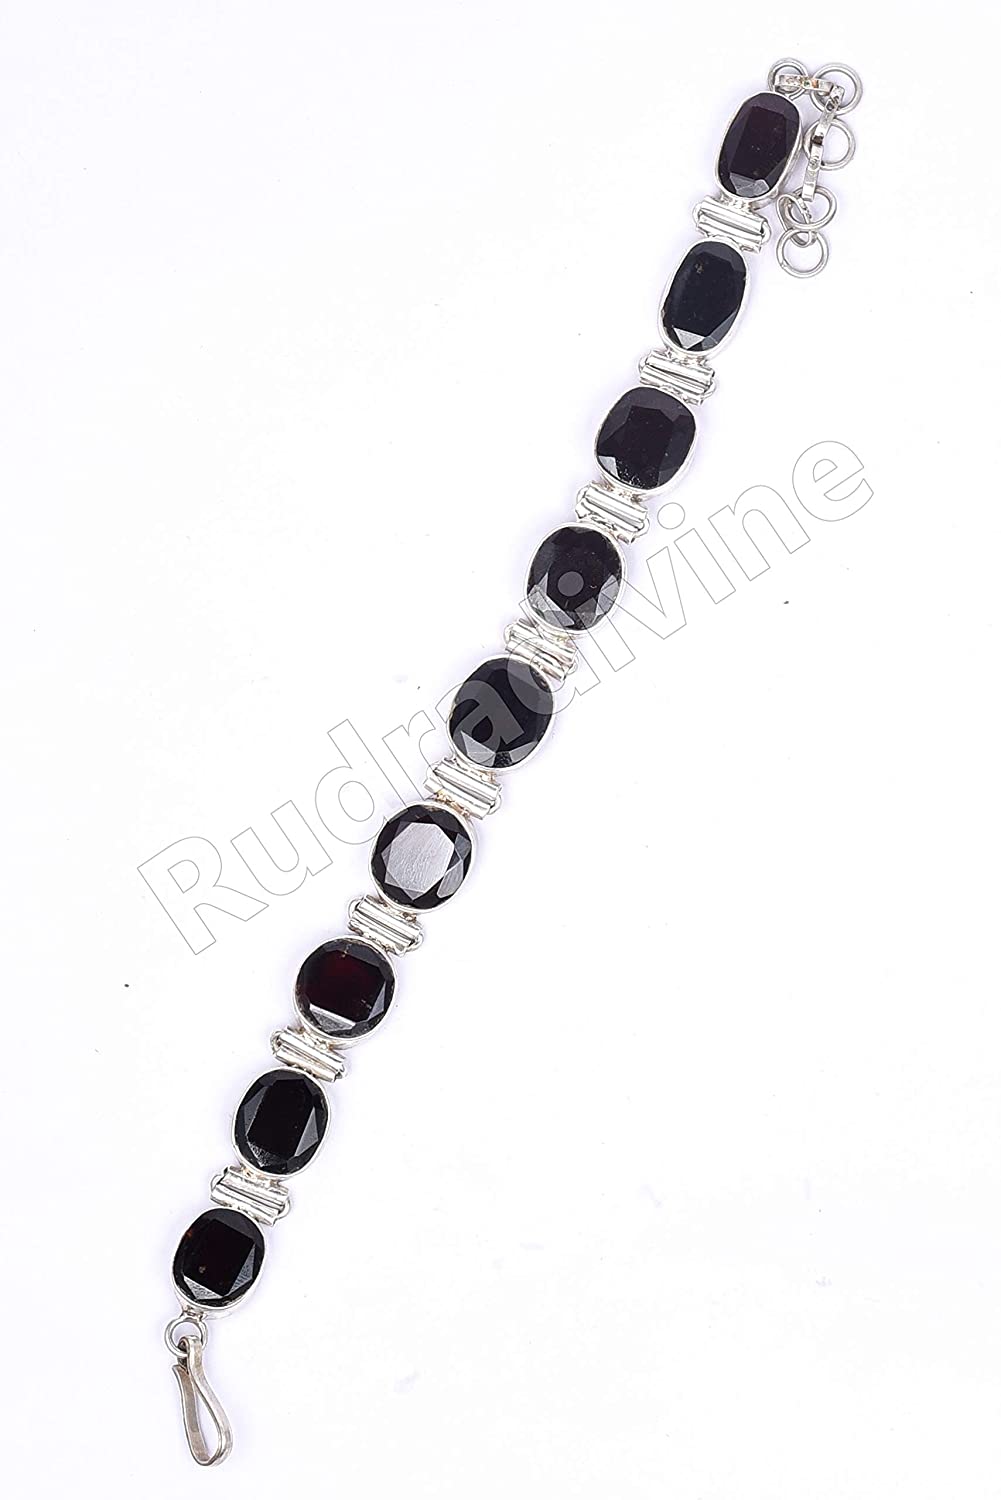 Navratan Rudraksha Beads Bracelet- Order Now!